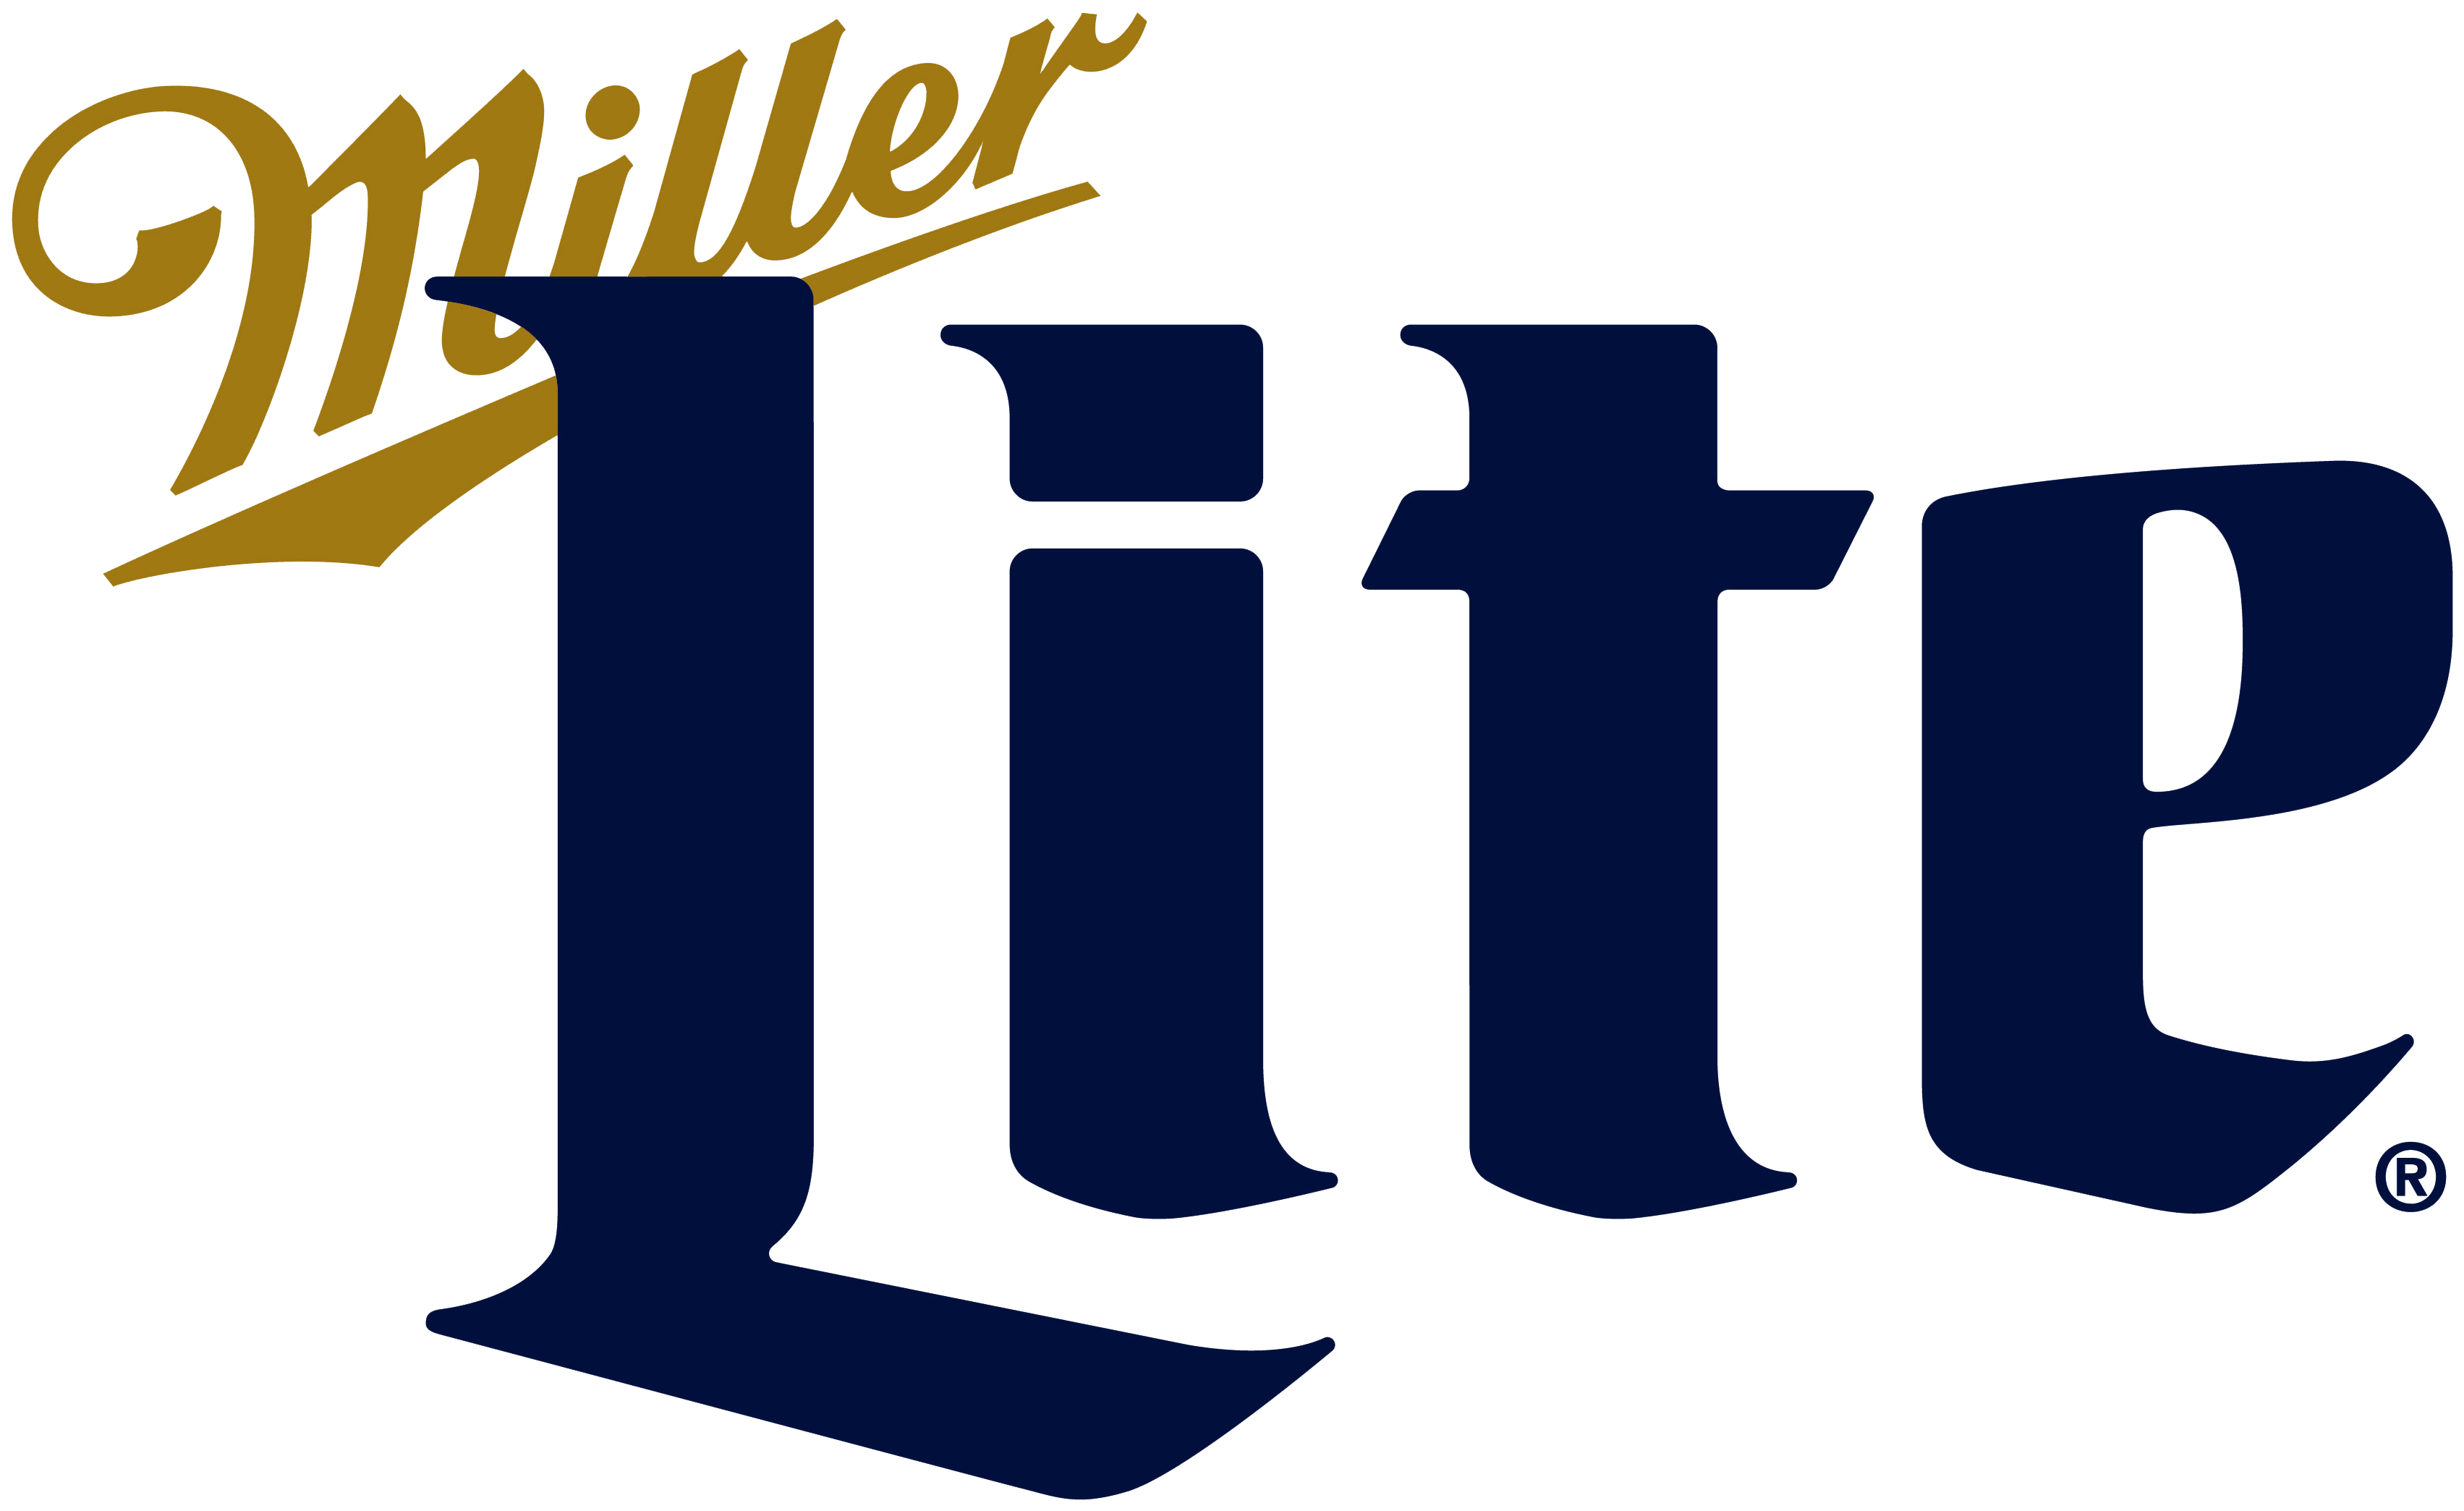 Miller Light Logo - Download Miller Light - Miller Lite Logo Png PNG Image with No ...